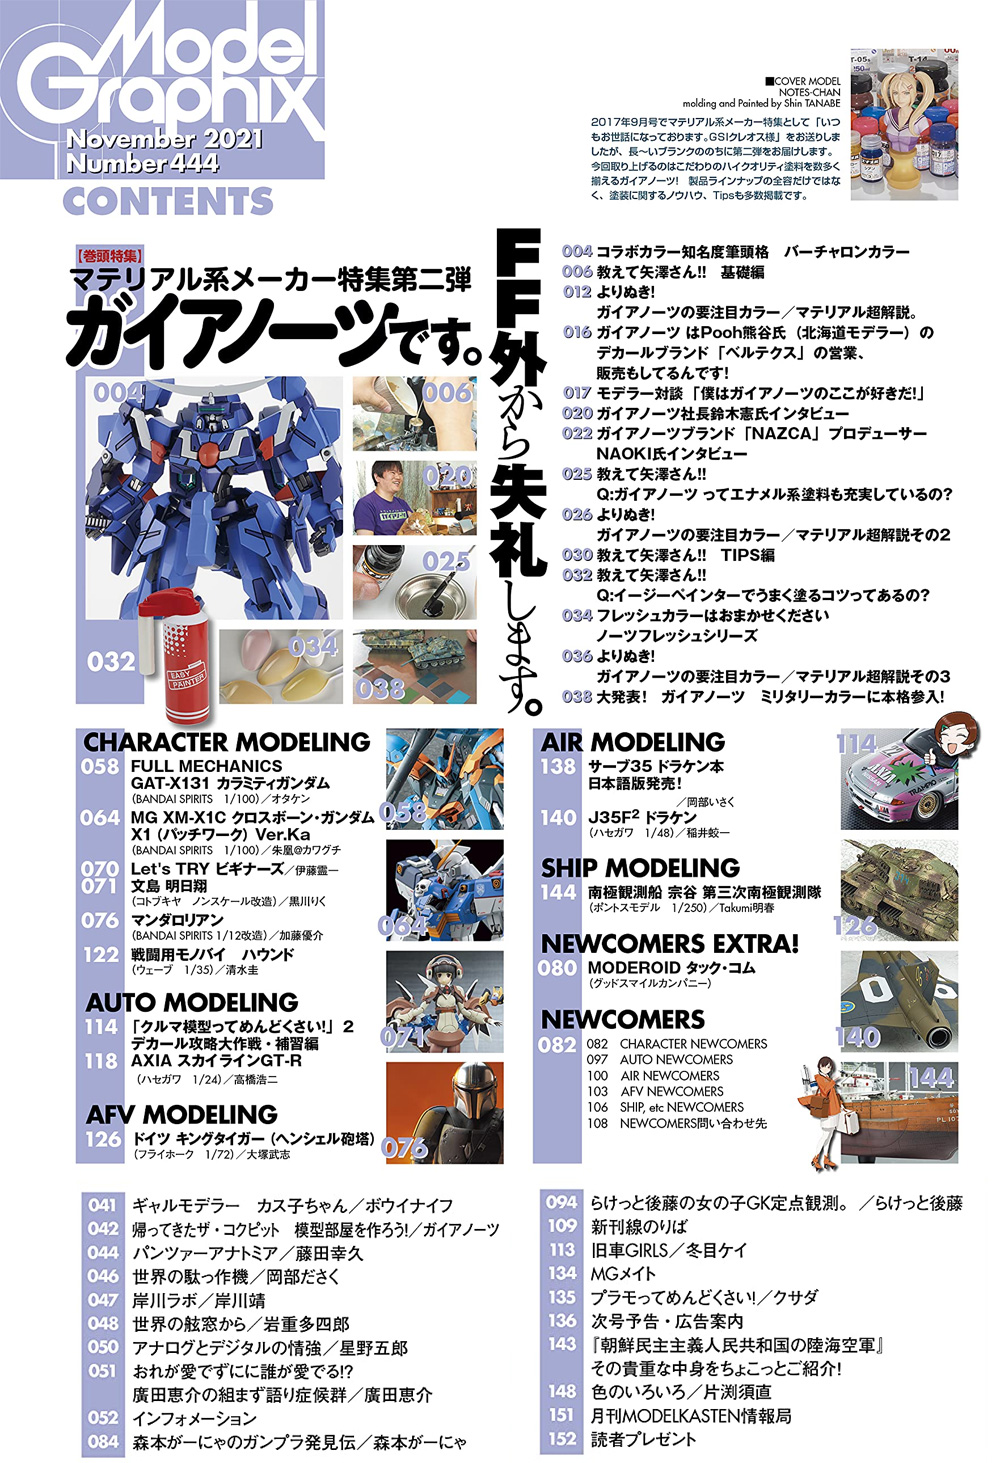 モデルグラフィックス 2021年11月号 雑誌 (大日本絵画 月刊 モデルグラフィックス No.444) 商品画像_1